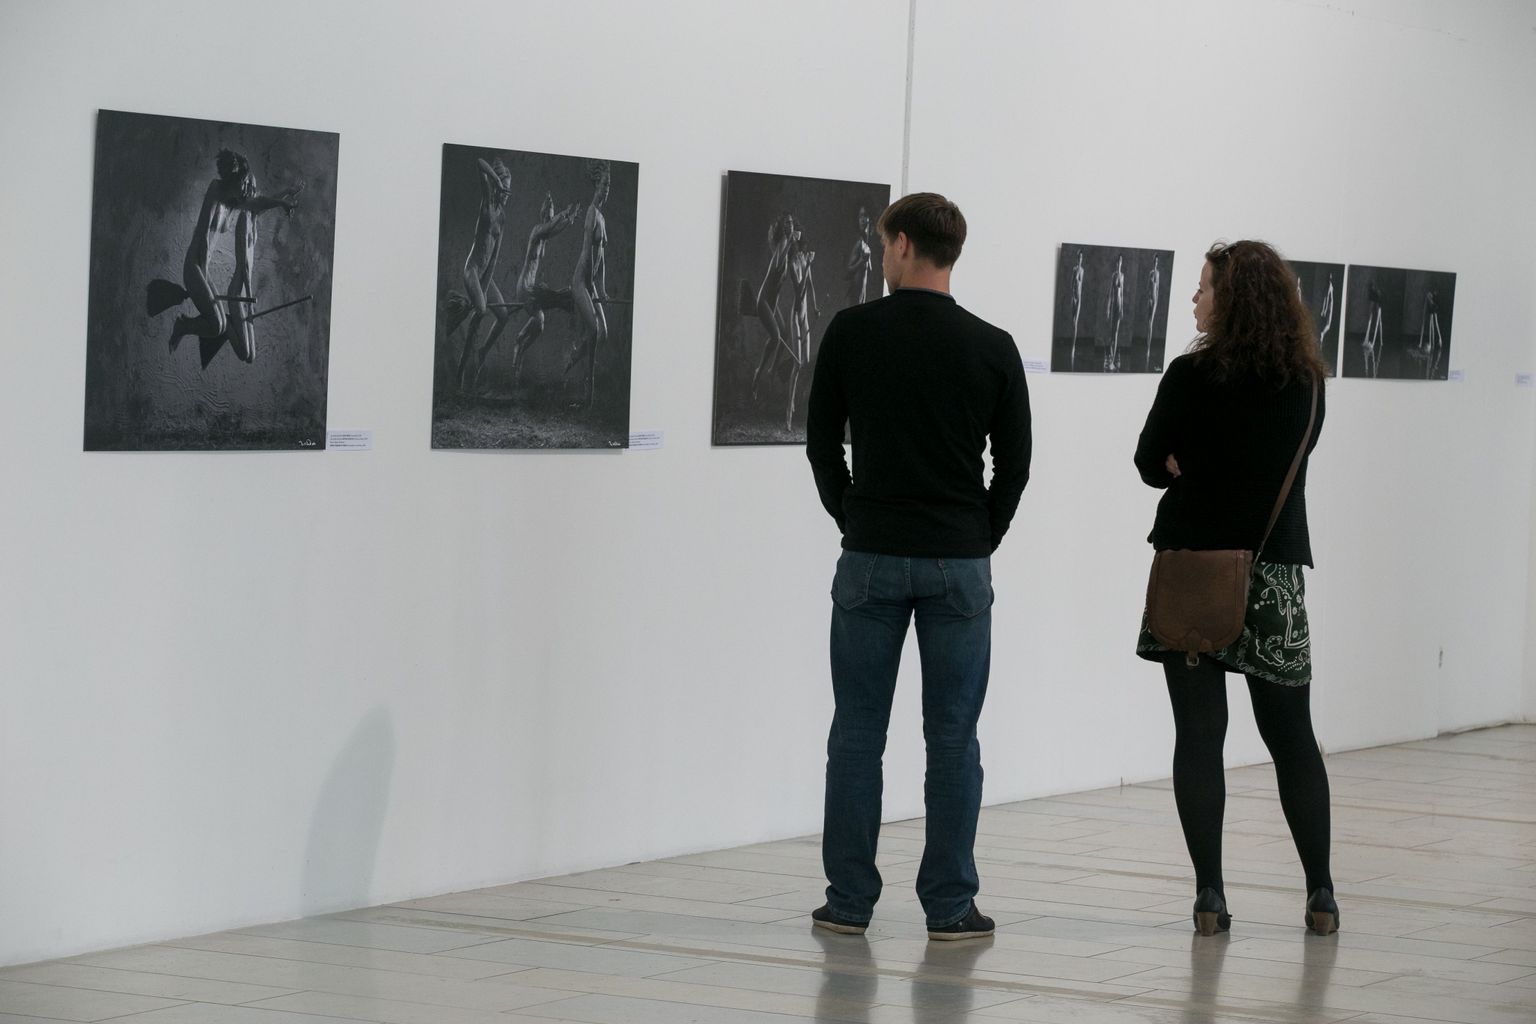 Pühapäeval avati Pärnu uue kunsti muuseumis XXI aktinäitus “Mees ja naine: ootus”.